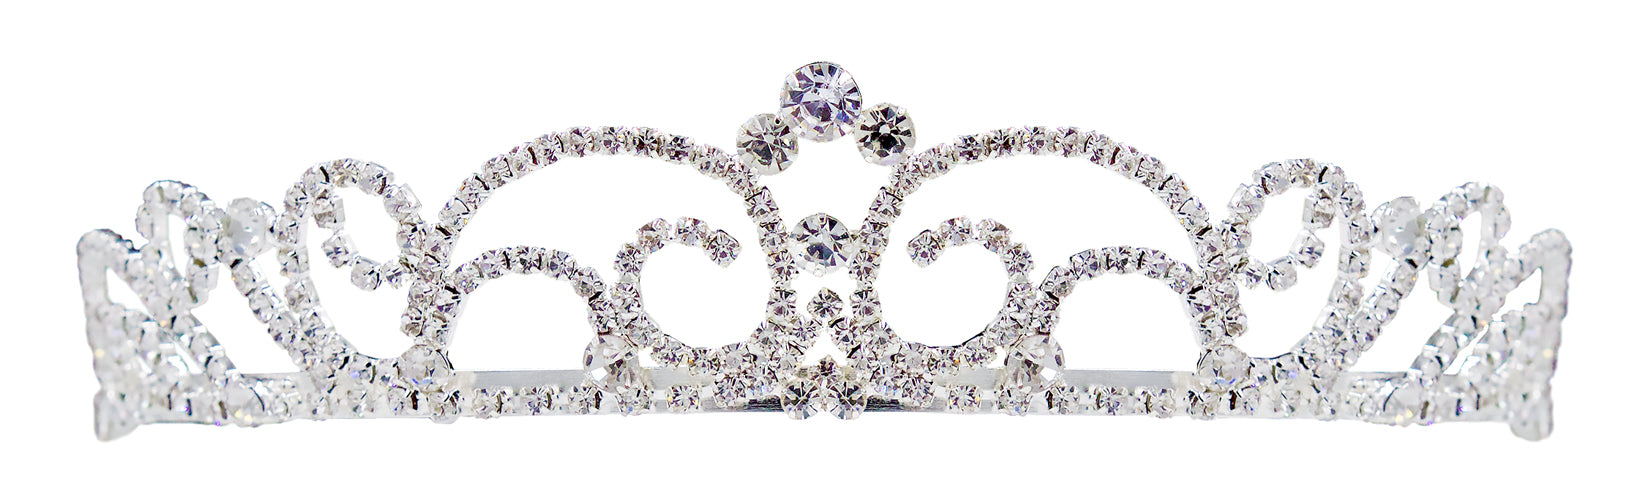 #16584 - Small Diamond Top Swirl Tiara with Combs - 2"